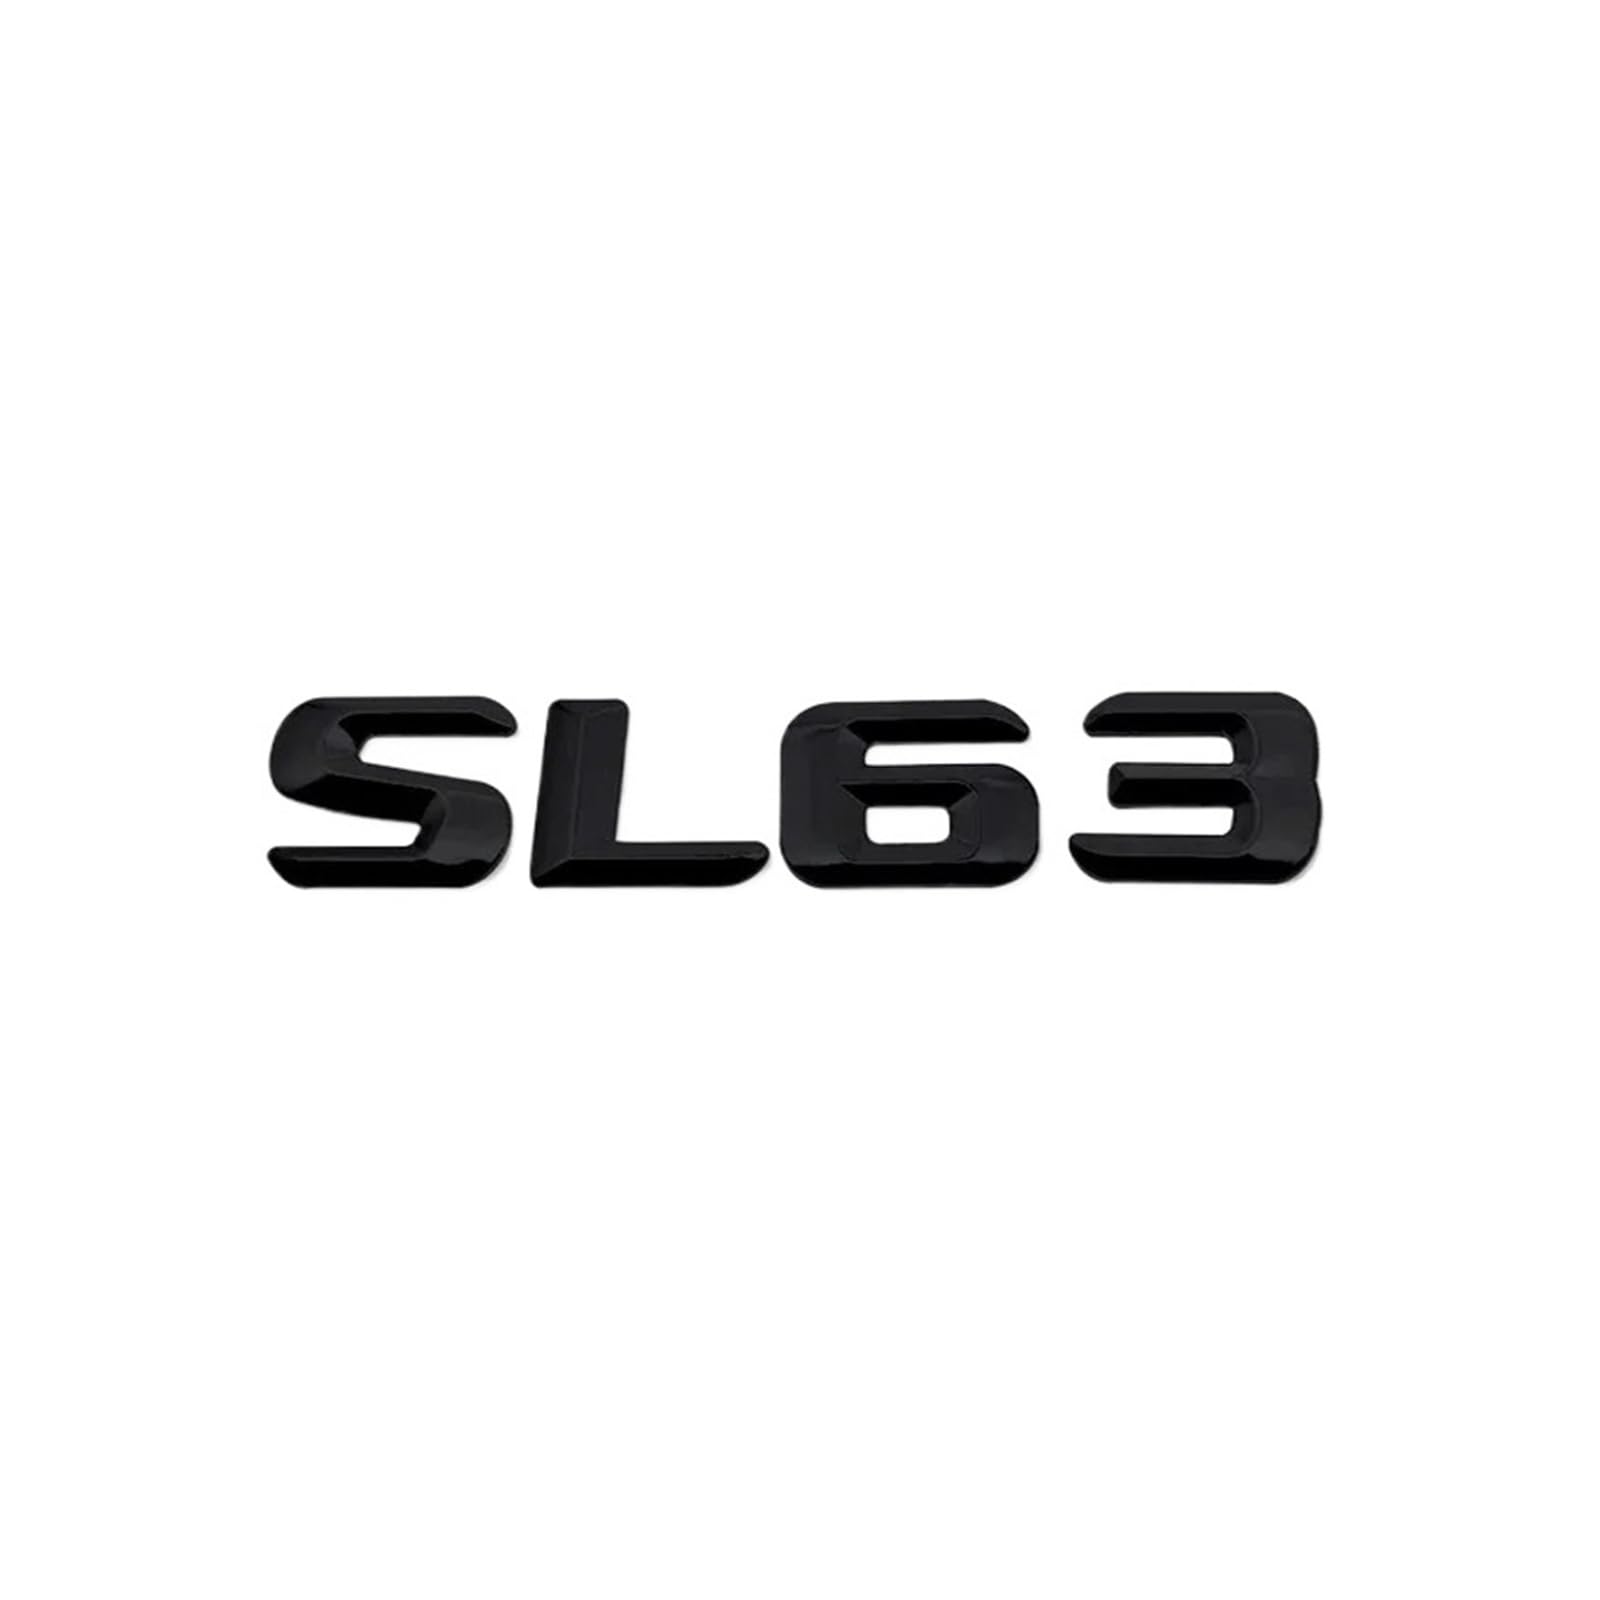 AQXYWQOL 3D-Auto-Heck-Nummern-Buchstaben-Emblem, kompatibel mit SL63 SL65 SL280 SL300 SL320, Auto-Heck-Kofferraum-Abzeichen-Aufkleber-Dekoration Farbe ist konstant, verblasst nicht und beschädigt(SL63 von AQXYWQOL